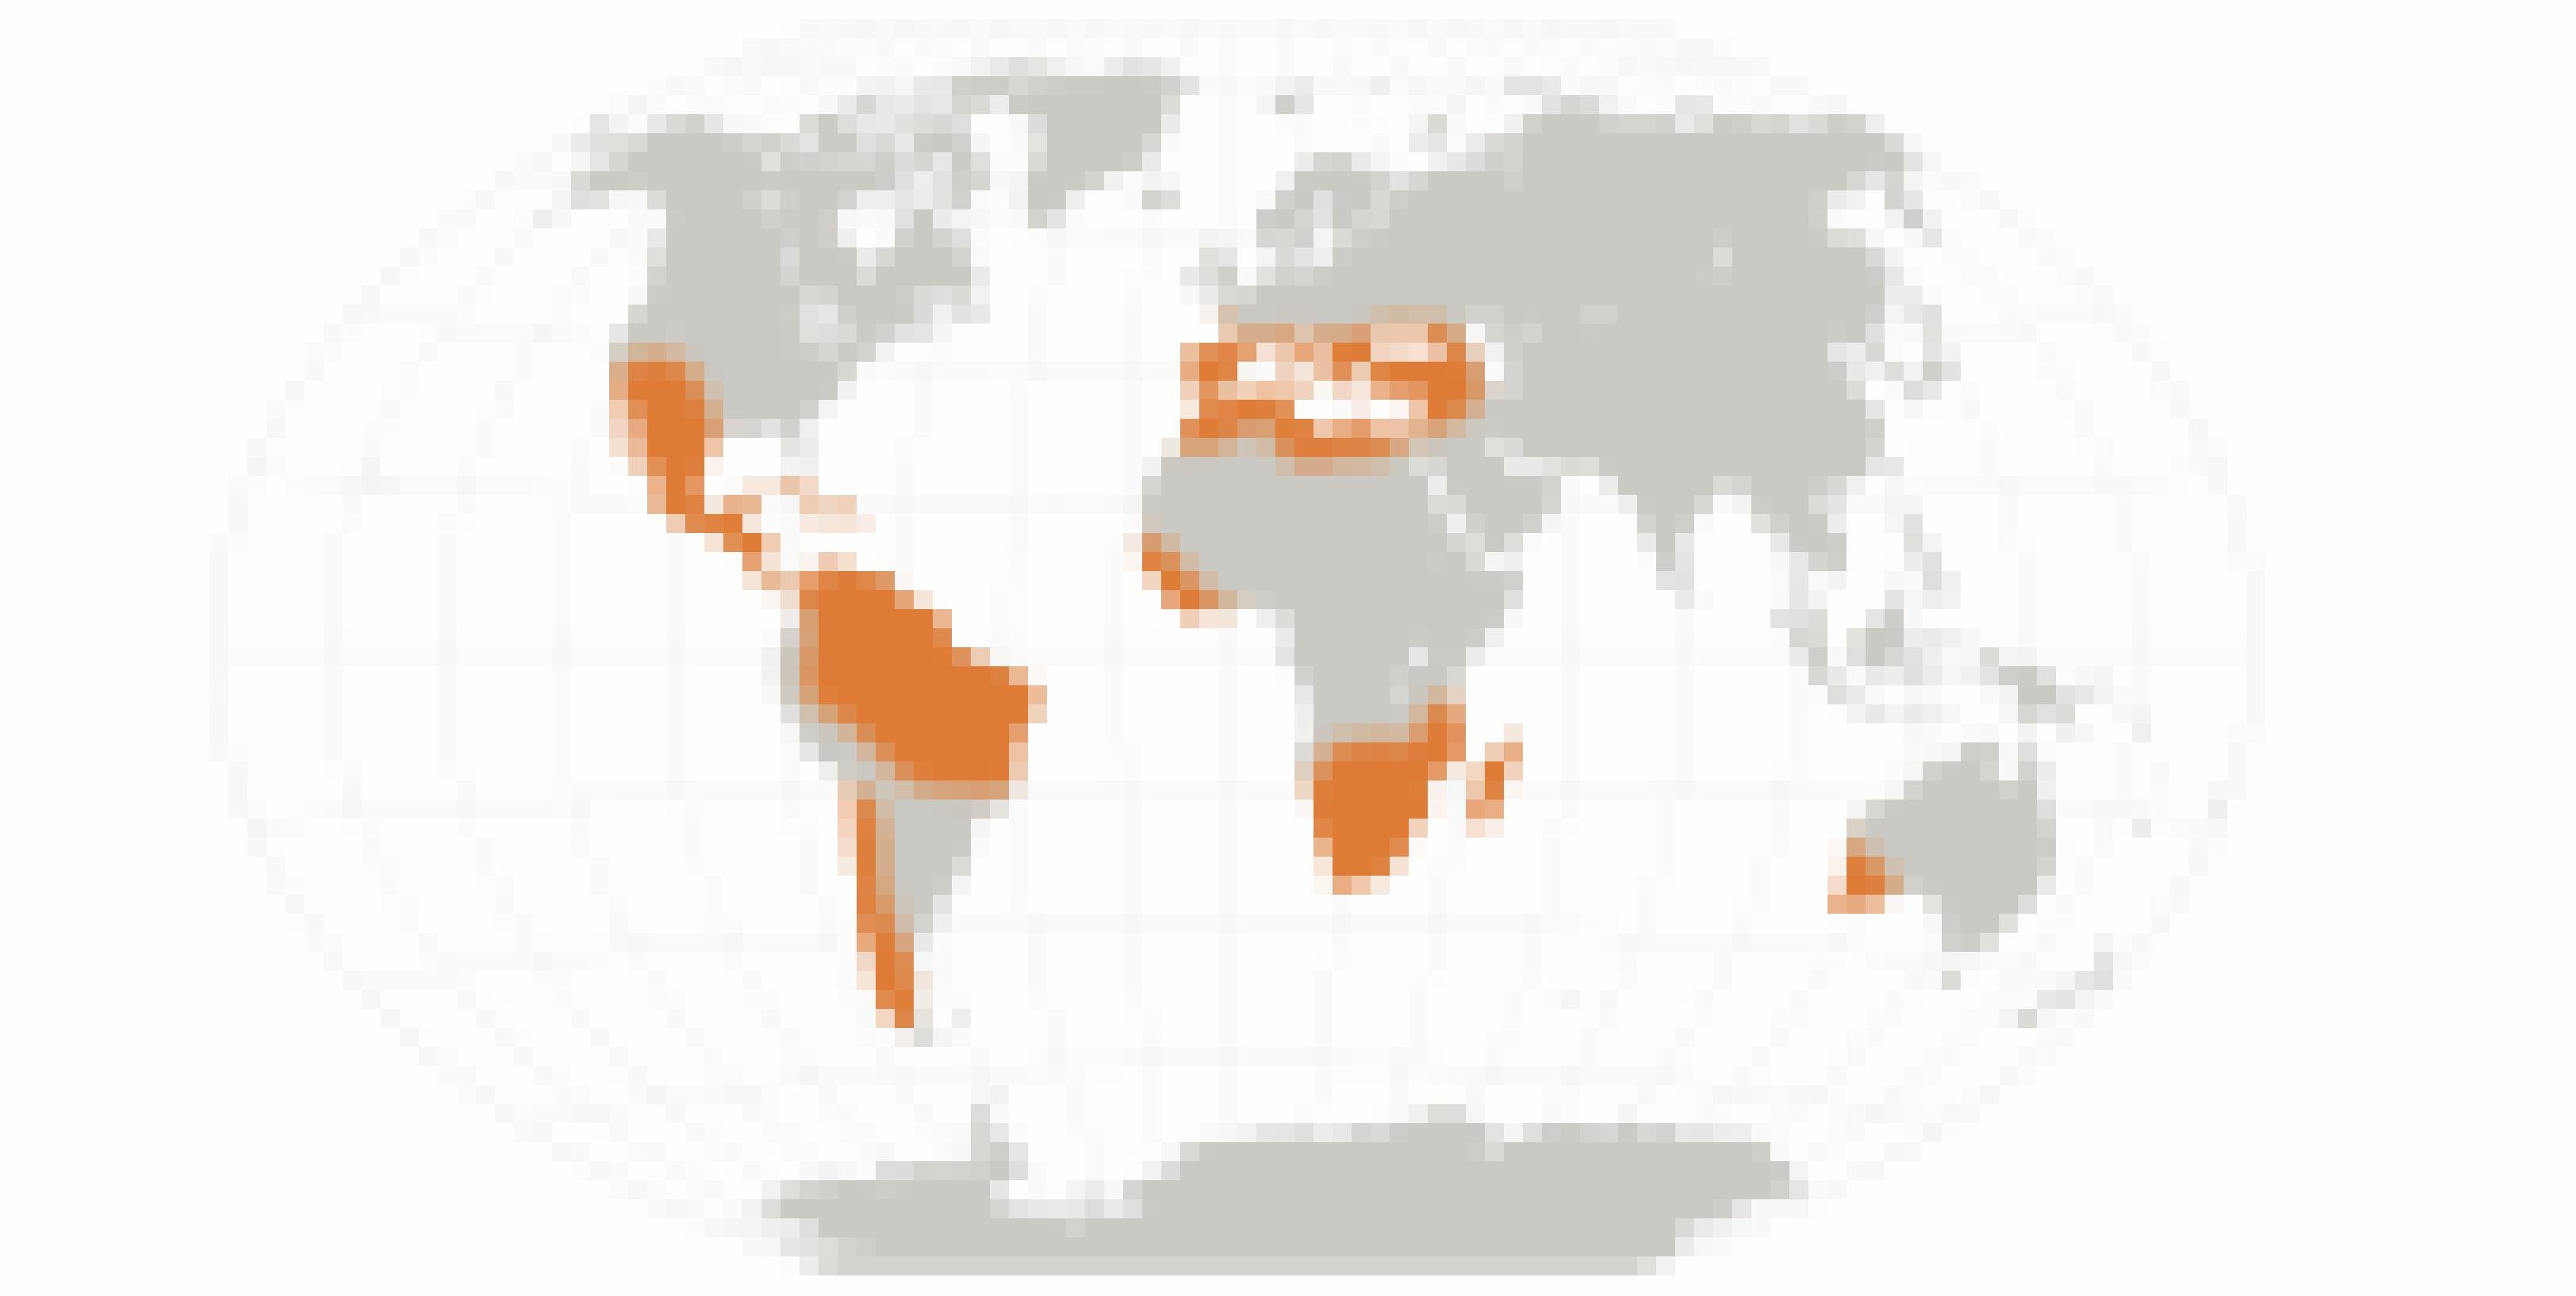 Weltkarte mit Hervorhebung der besonders von Dürren bedrohten Regionen.